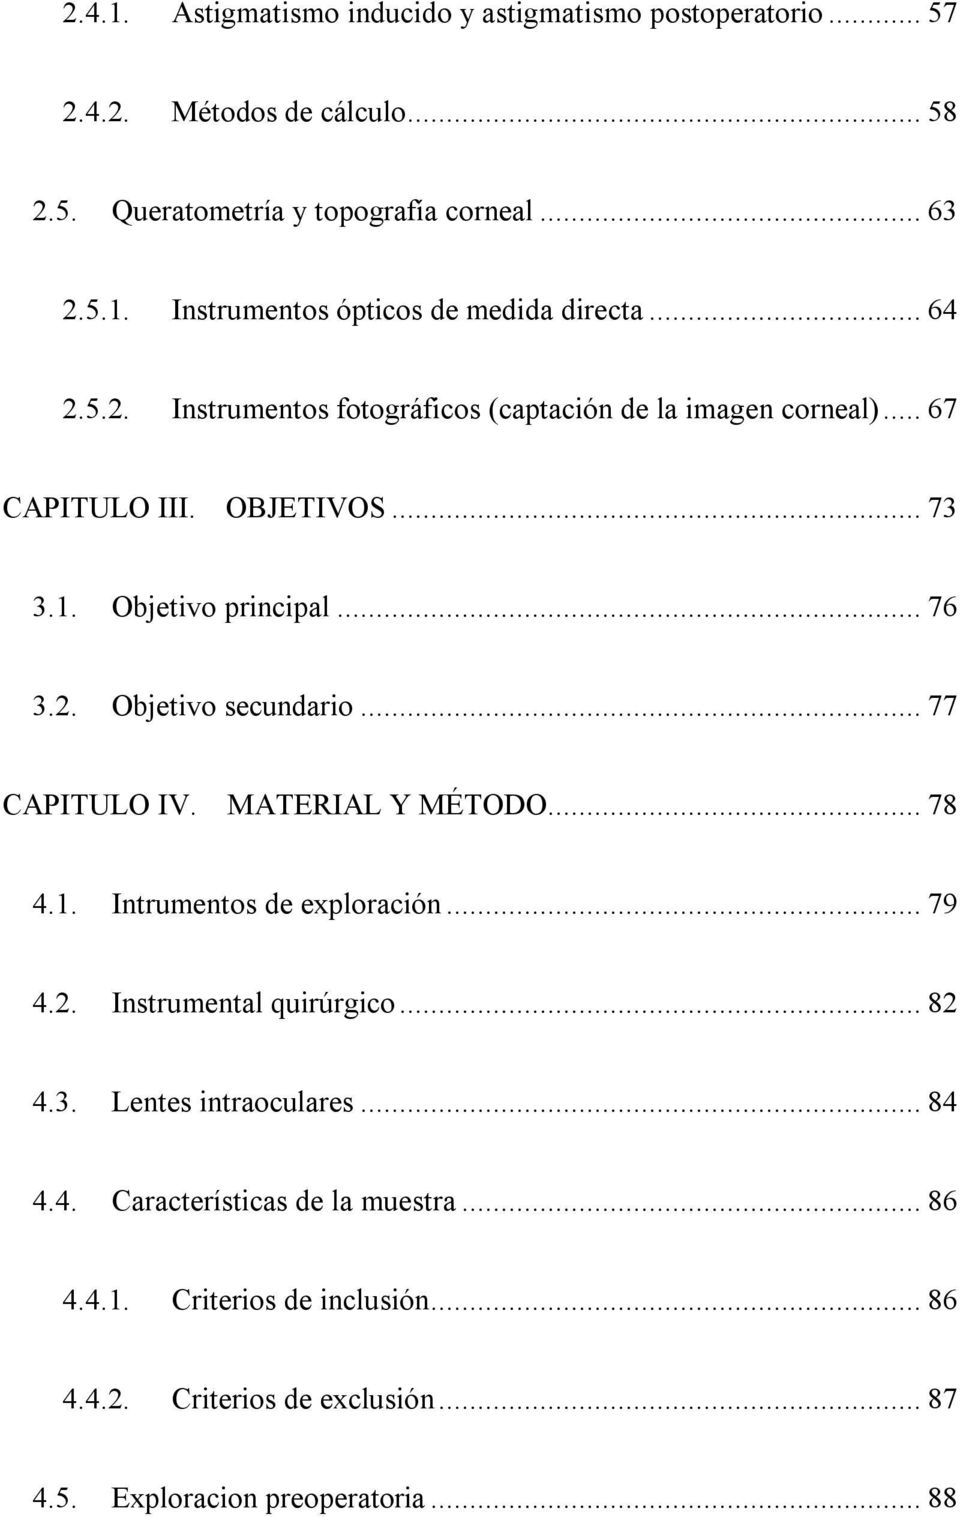 ..77 CAPITULO IV. MATERIAL Y MÉTODO...78 4.1. Intrumentos de exploración...79 4.2. Instrumental quirúrgico...82 4.3. Lentes intraoculares...84 4.4. Características de la muestra.